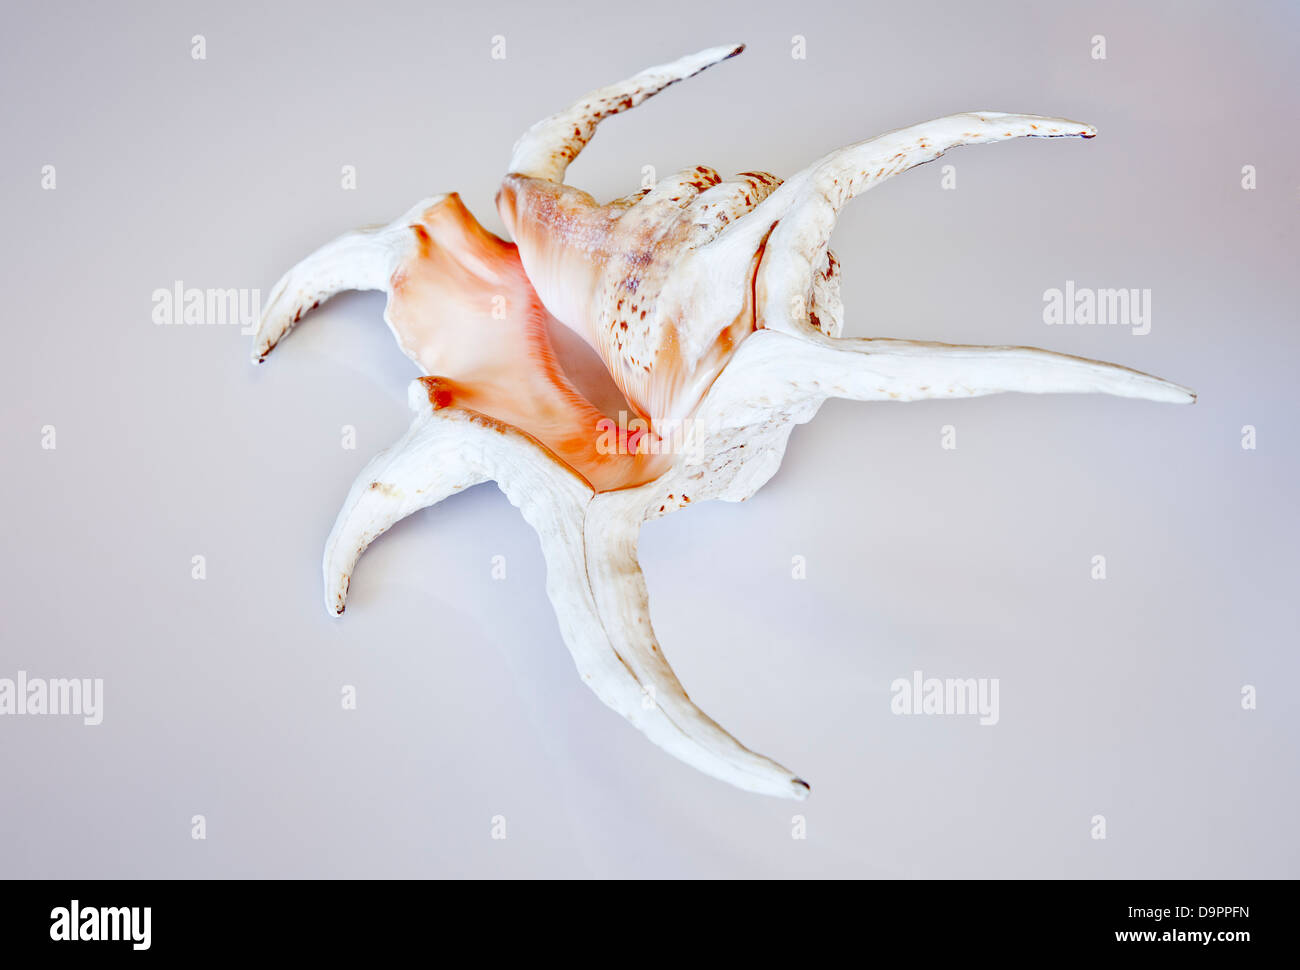 Lambis chiragra shell. Stock Photo